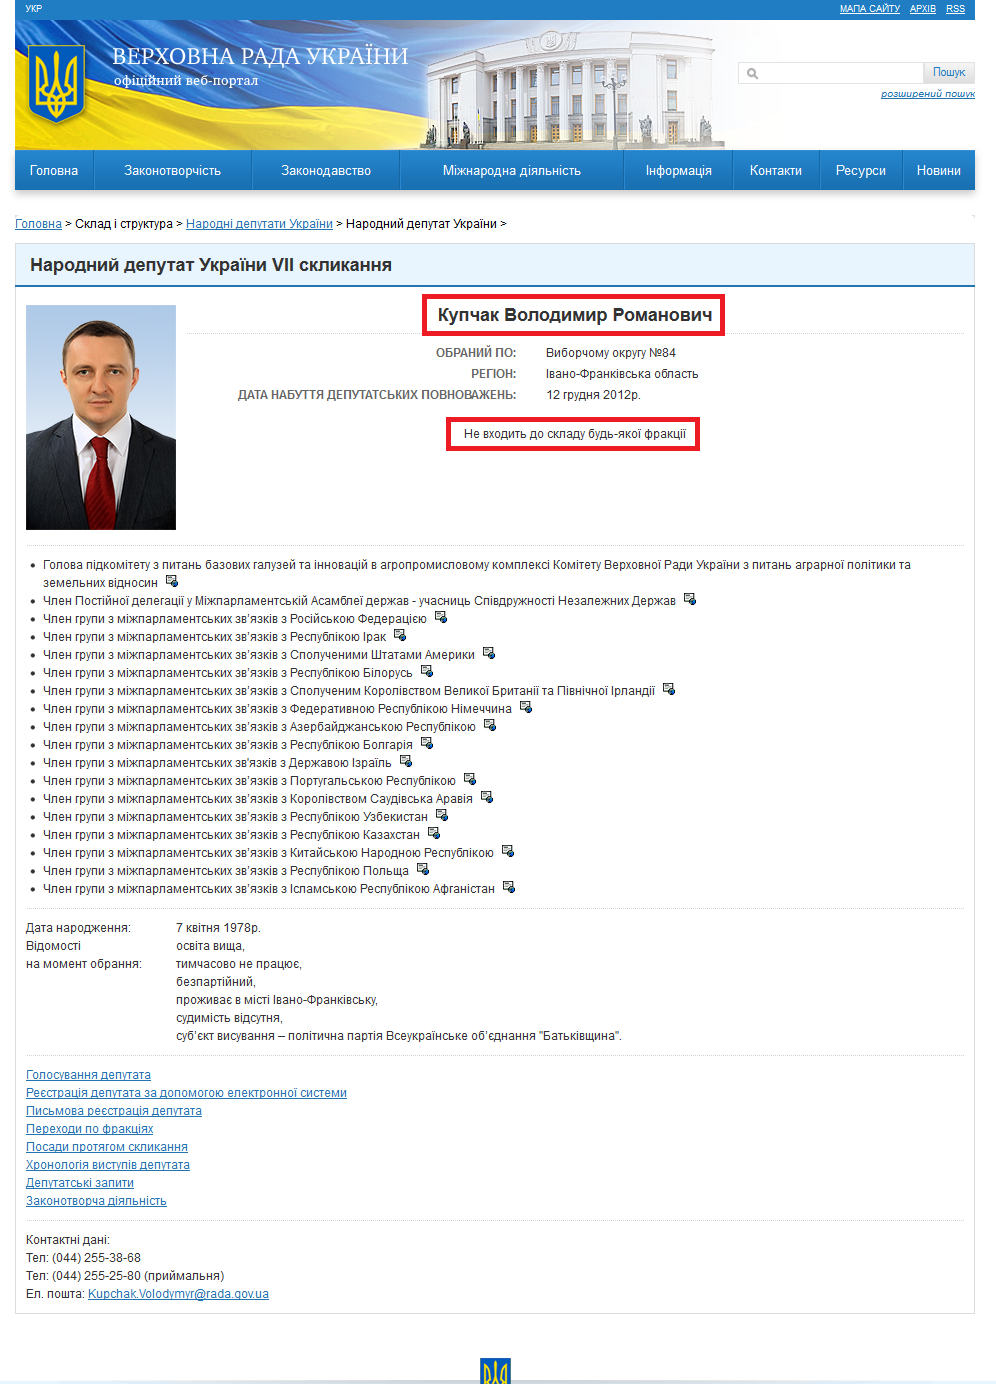 http://gapp.rada.gov.ua/mps/info/page/15765